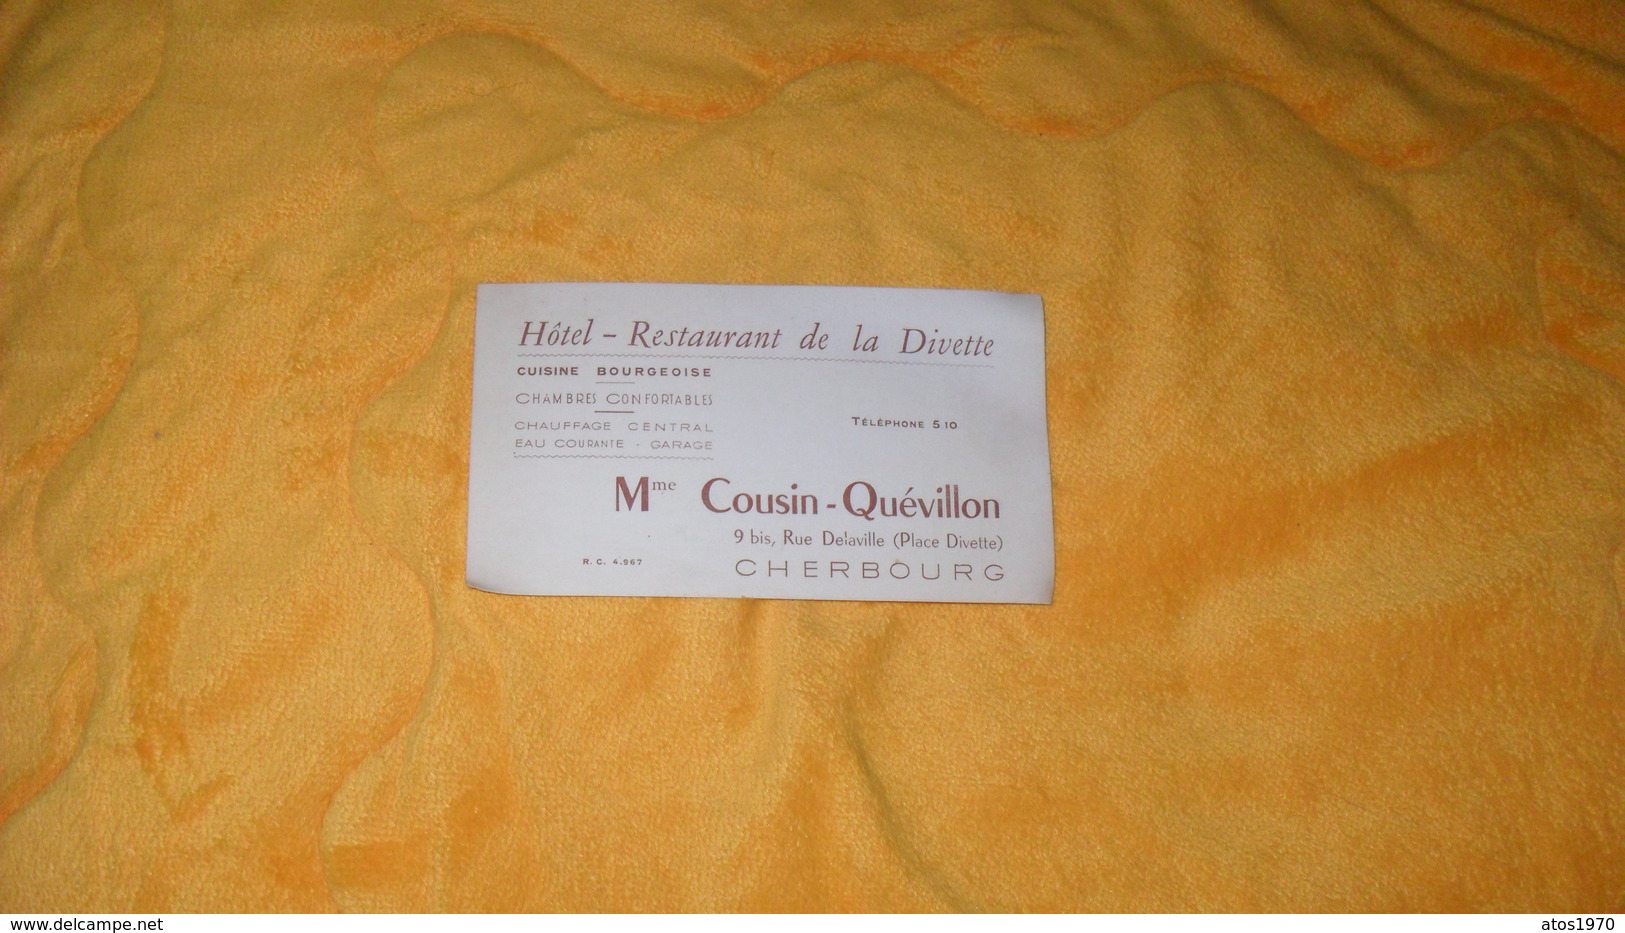 CARTE PUBLICITAIRE DATE ?../ Mme COUSIN QUEVILLON HOTEL RESTAURANT DE LA DIVETTE CHERBOURG.. - Werbung